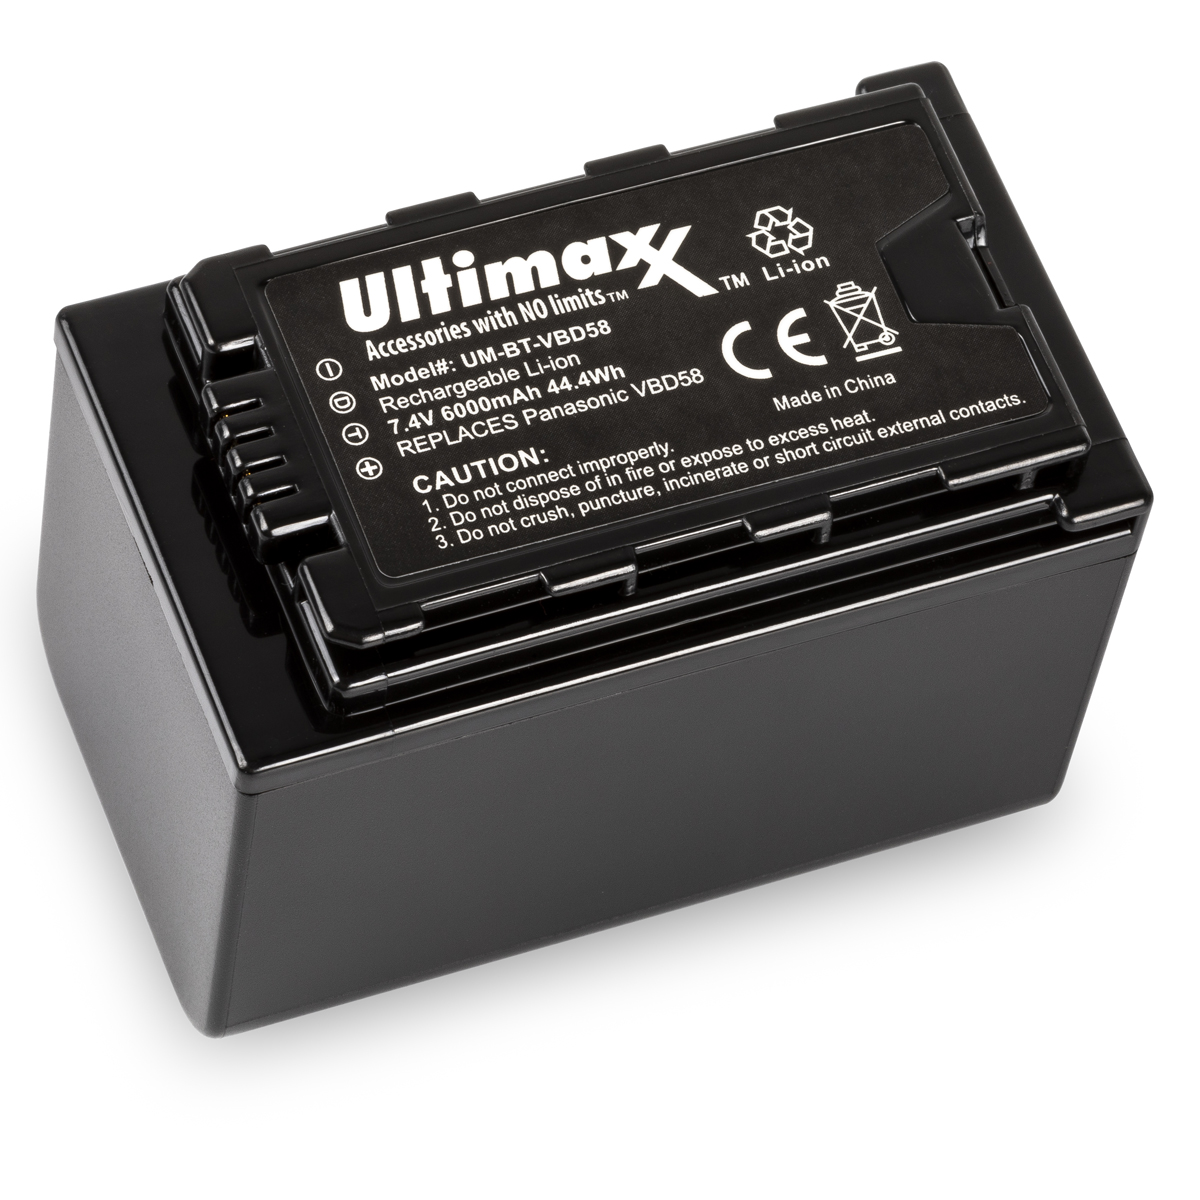 6000mAh Replacement Battery for Panasonic VW-VBD58, VW-VBD78, AG-VBR89G